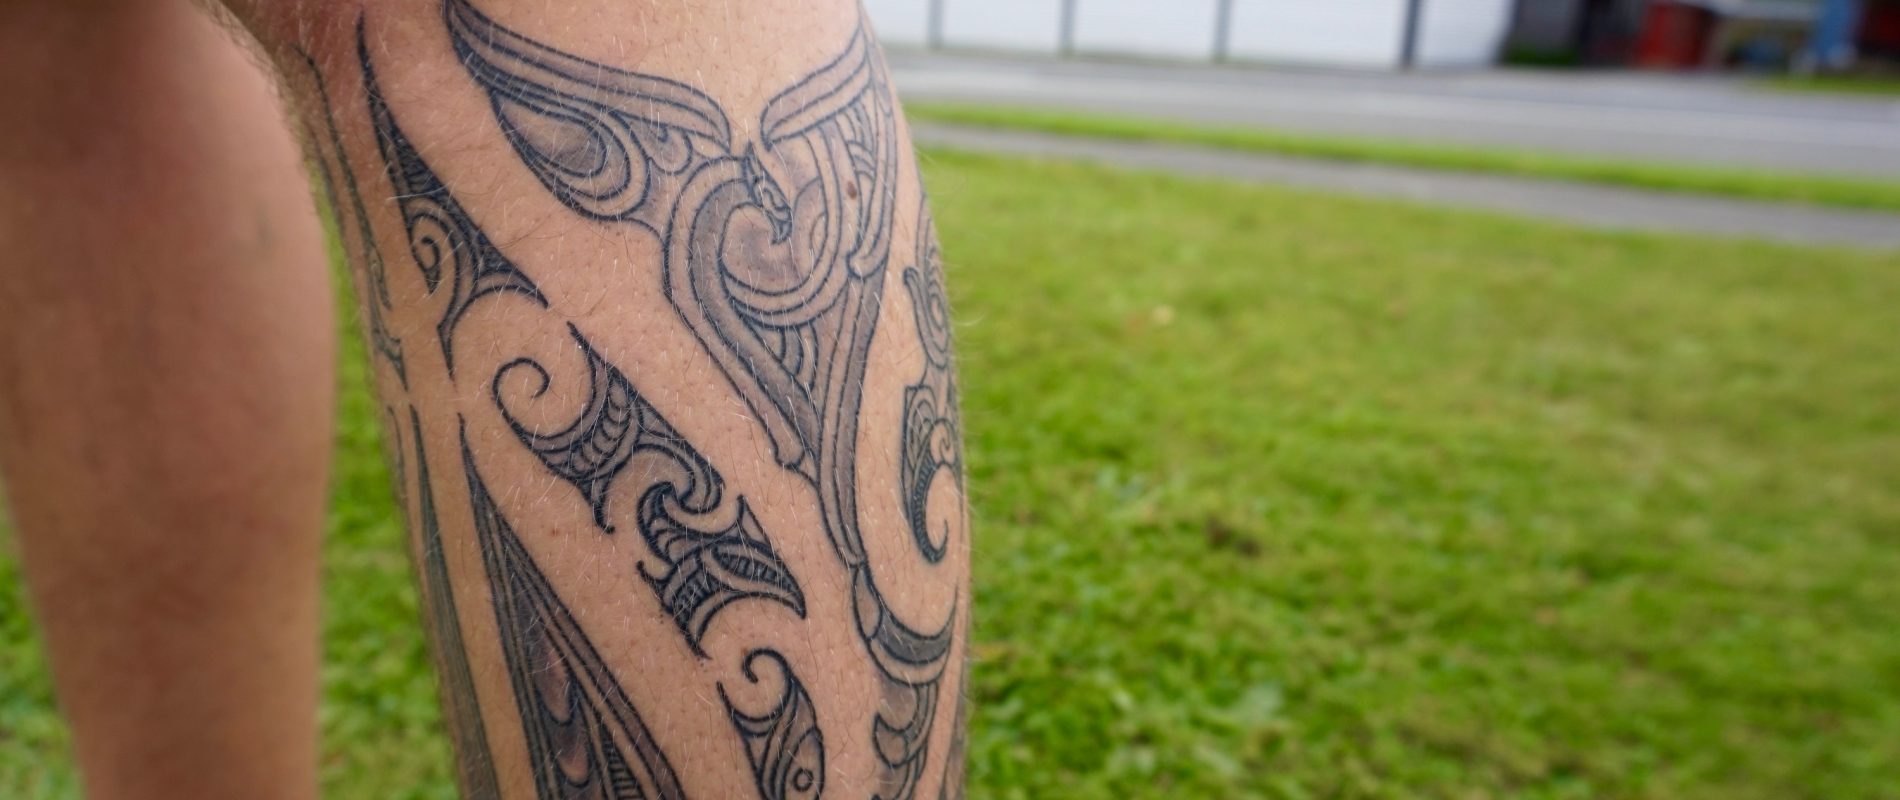 Forearm Tamoko Tattoo: Maori Style Beauty & Style Video | TikTok